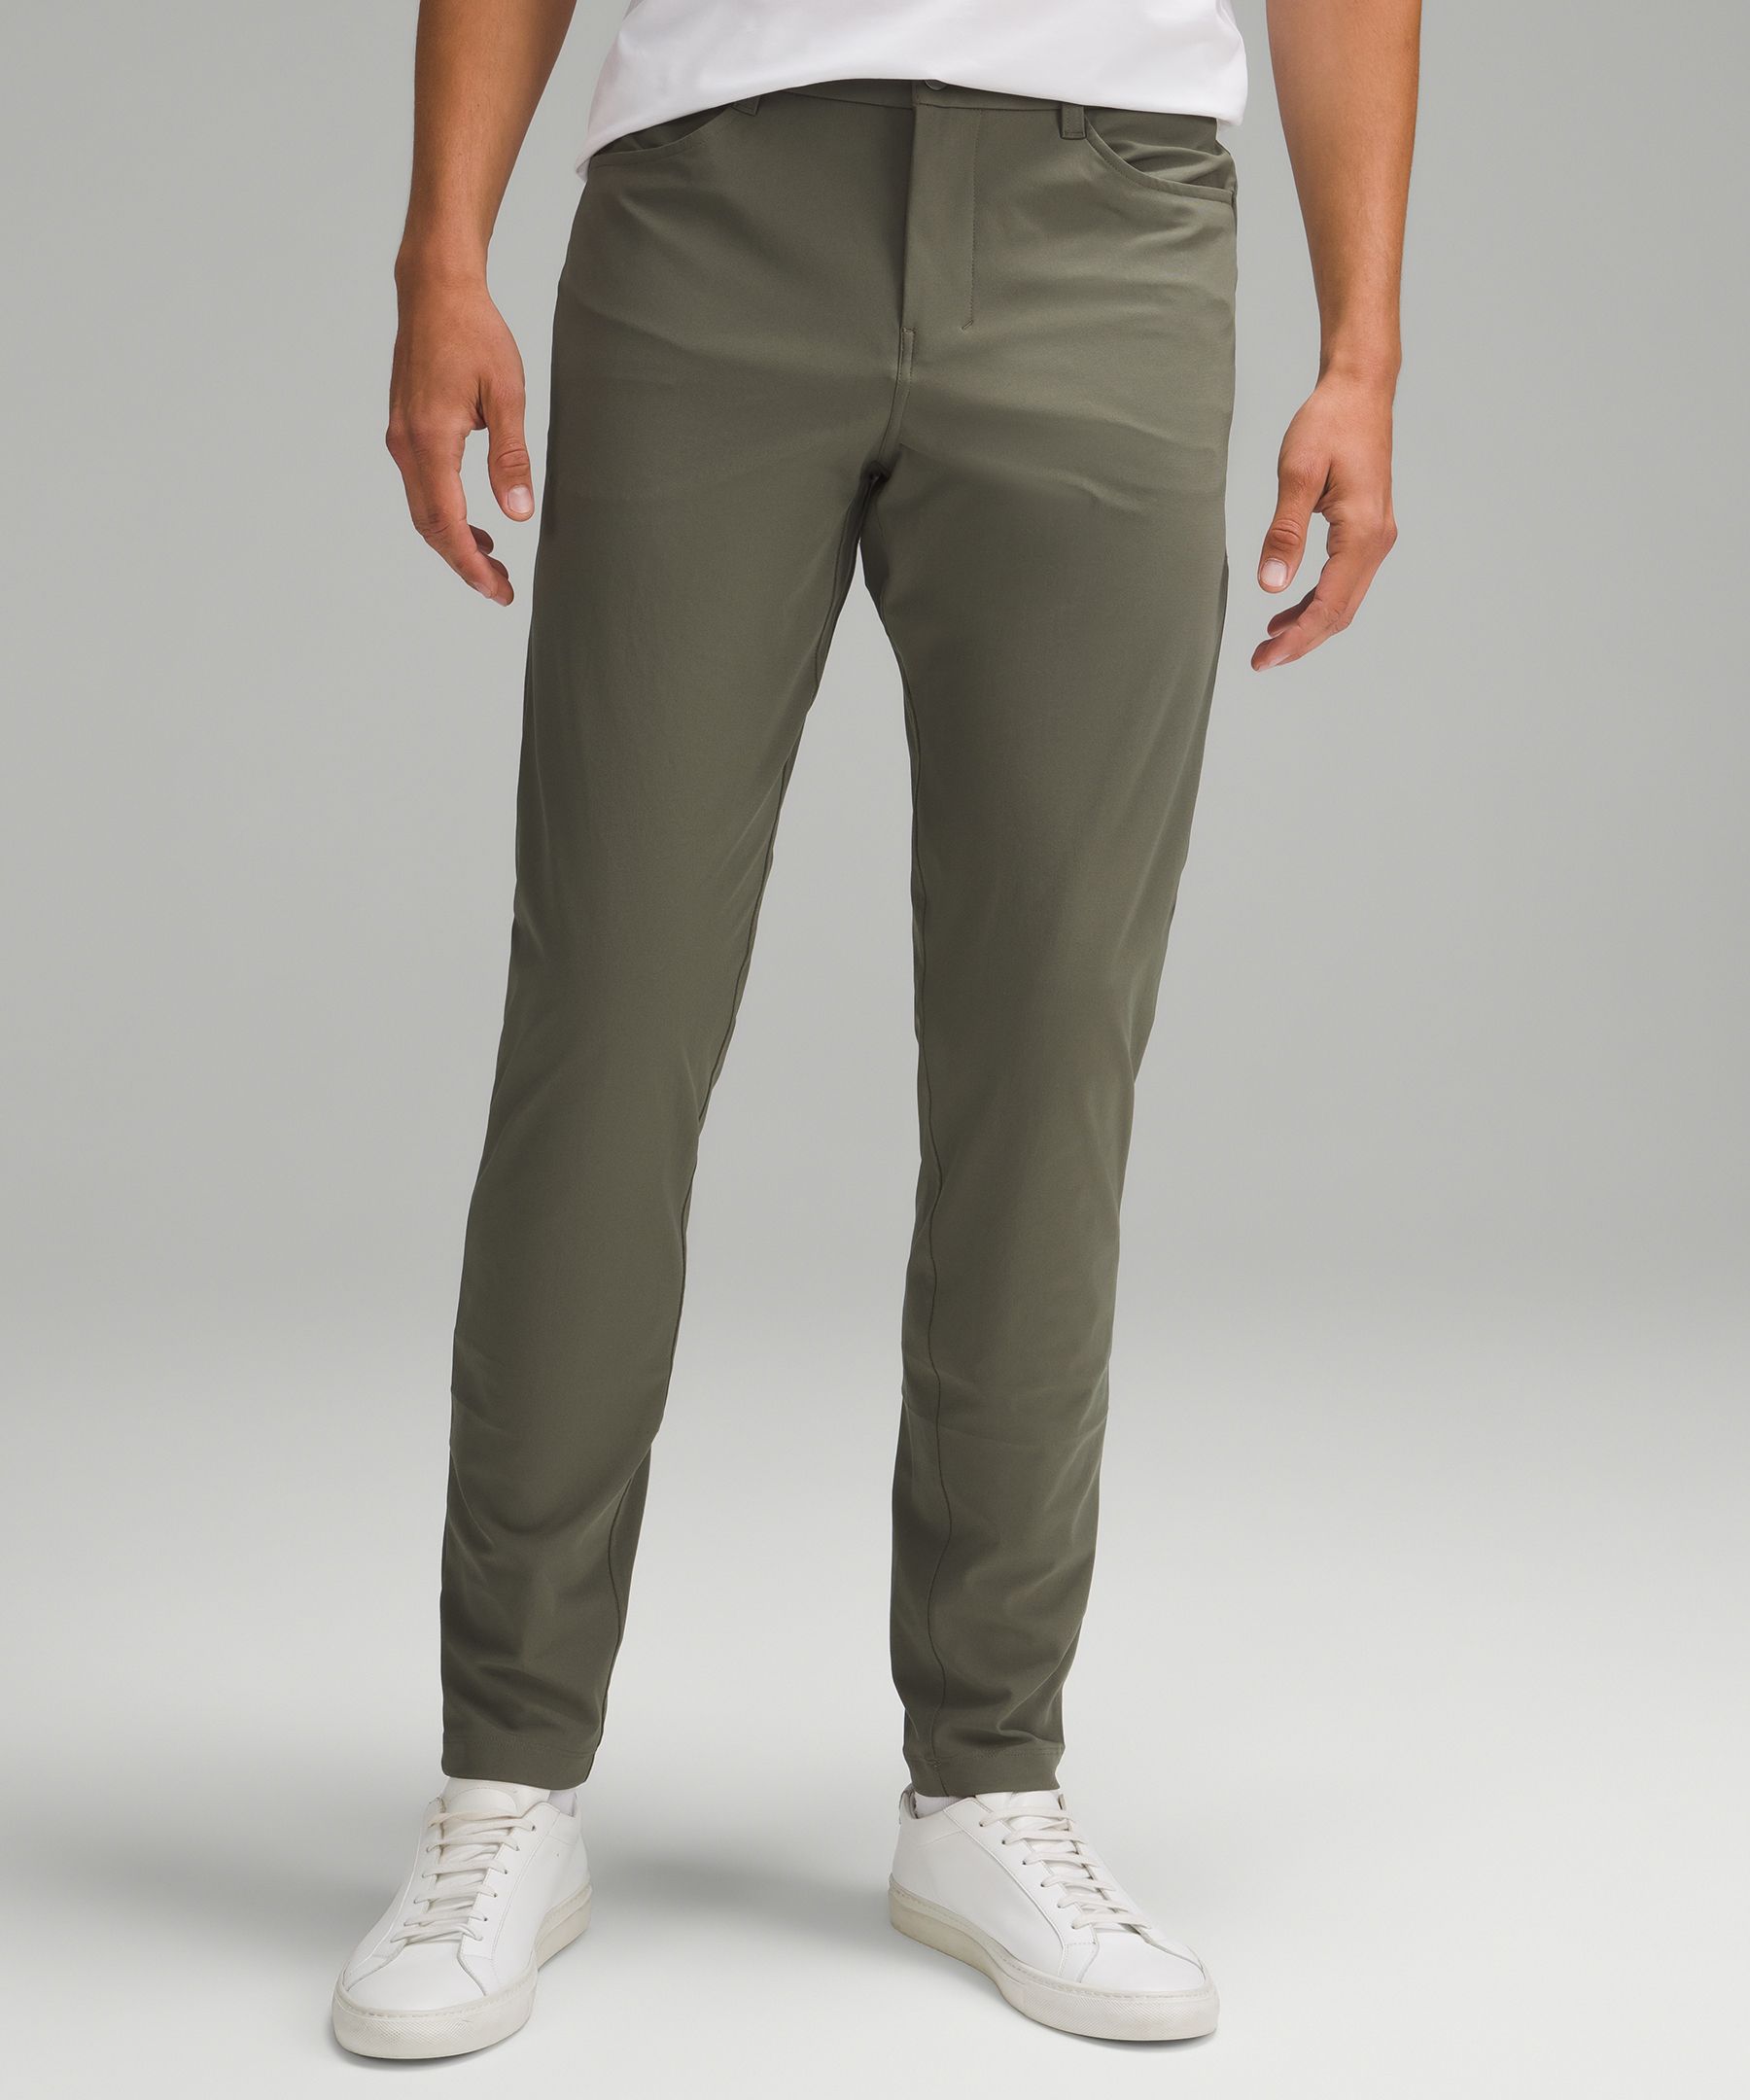 ABC Slim-Fit 5 Pocket Pant 30L *Warpstreme, Men's Trousers